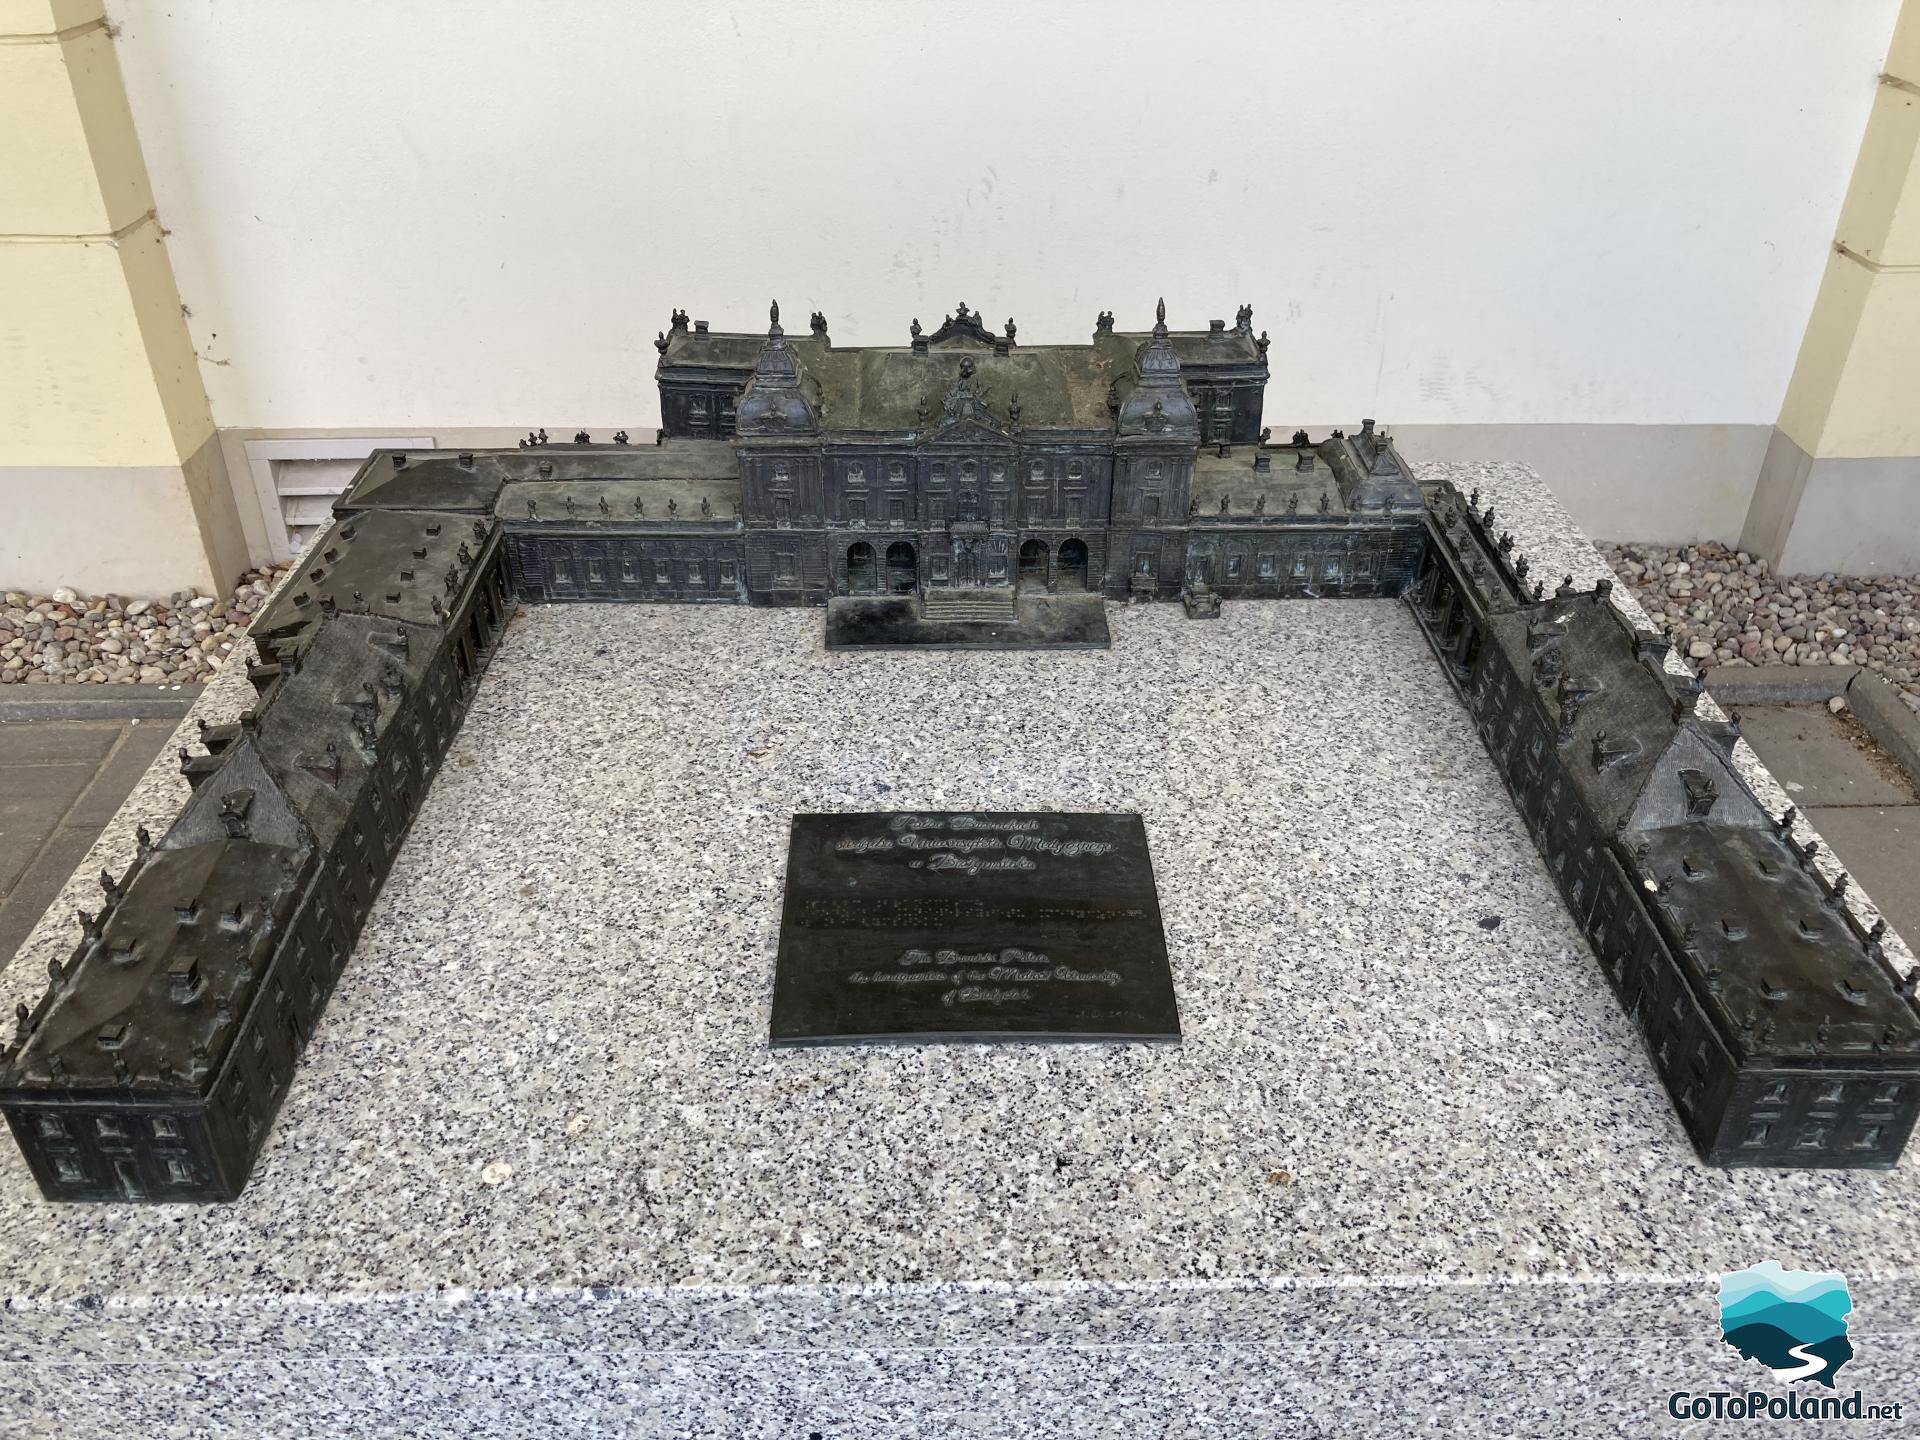 a model of the Branicki Palace